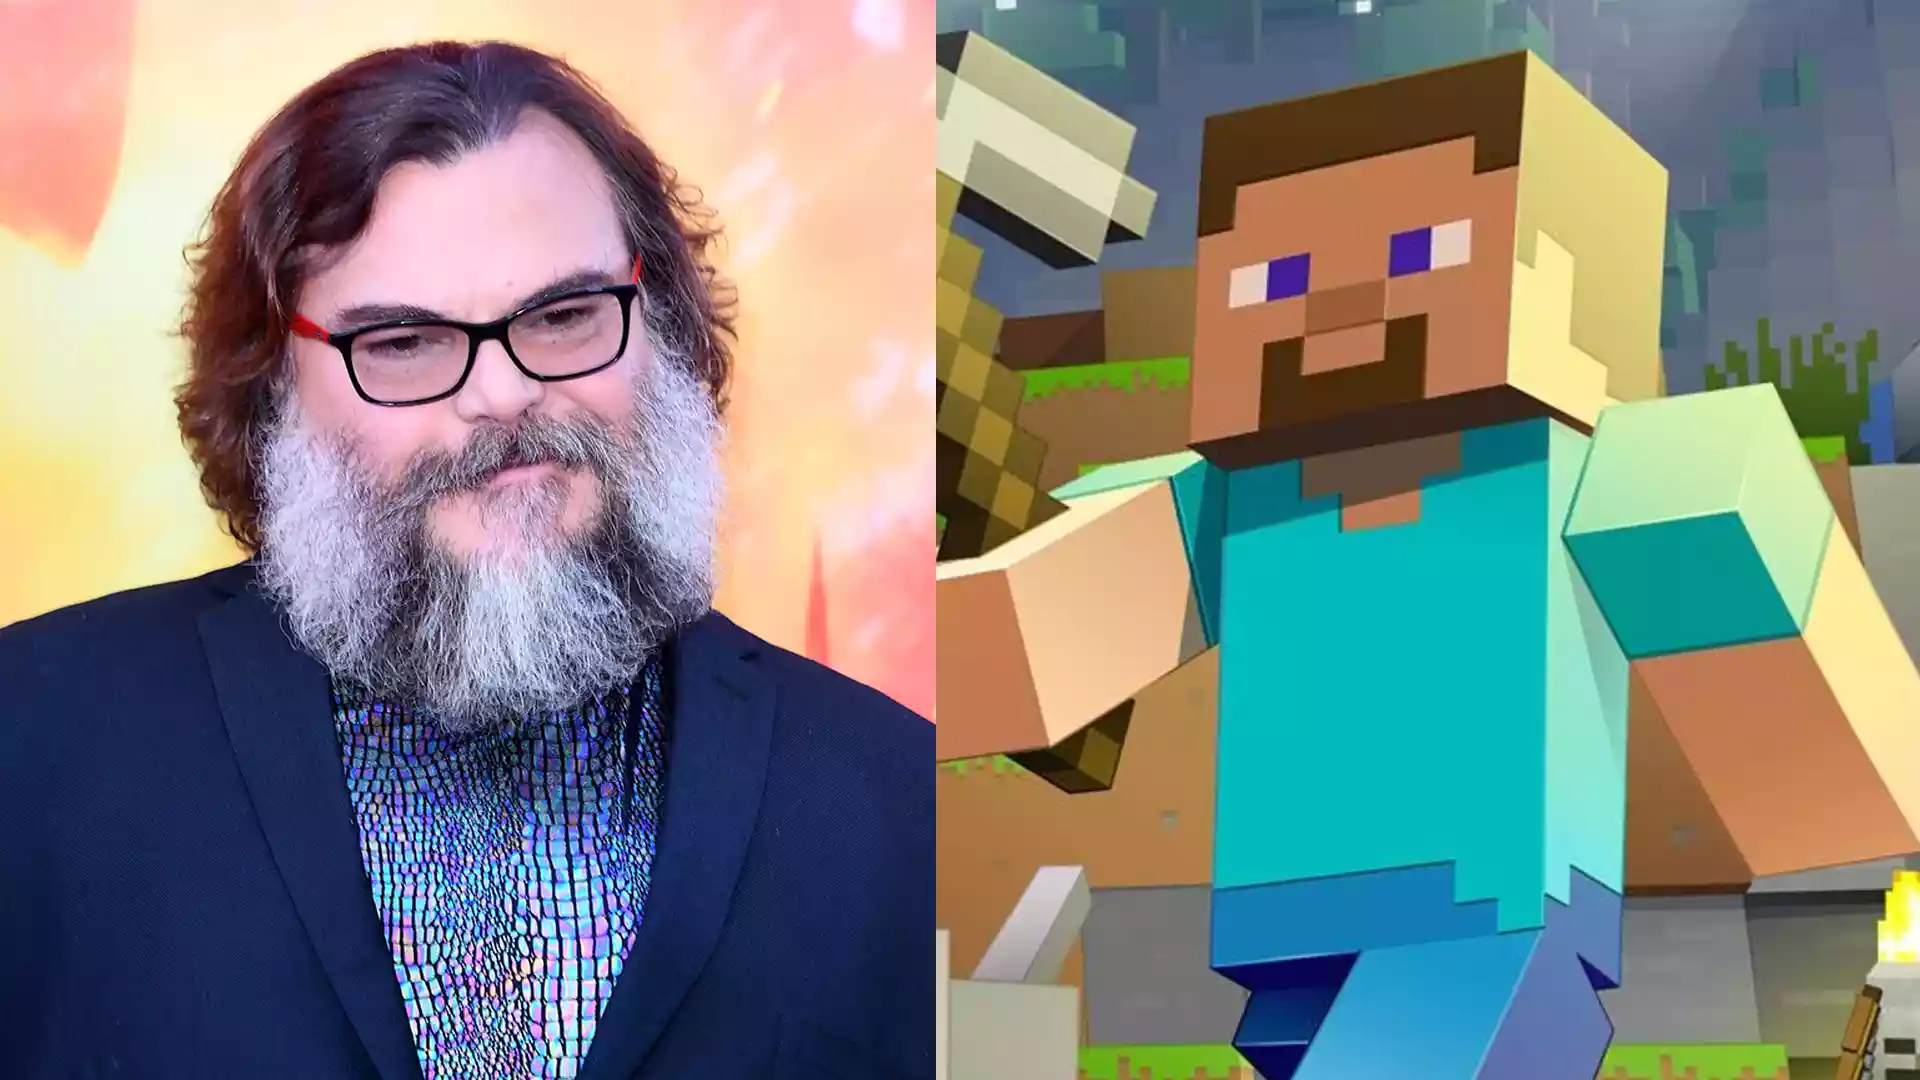 جک بلک بازی در نقش فیلم Minecraft را با عکسی خنده دار تایید کرد